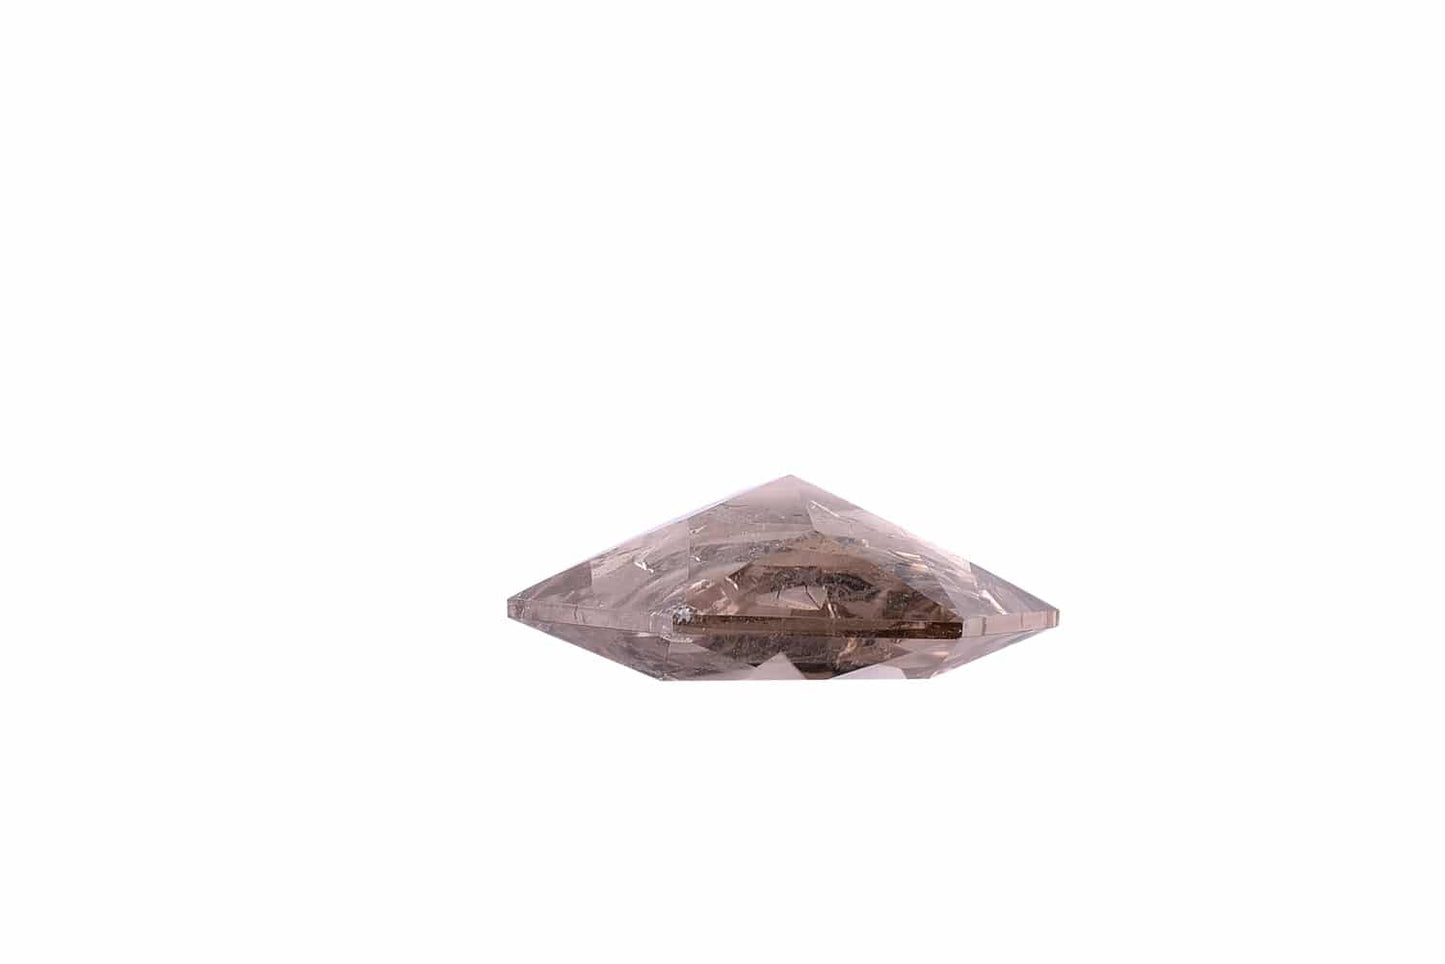 Ashy Diamond Geo Gem (Smokey Quartz)